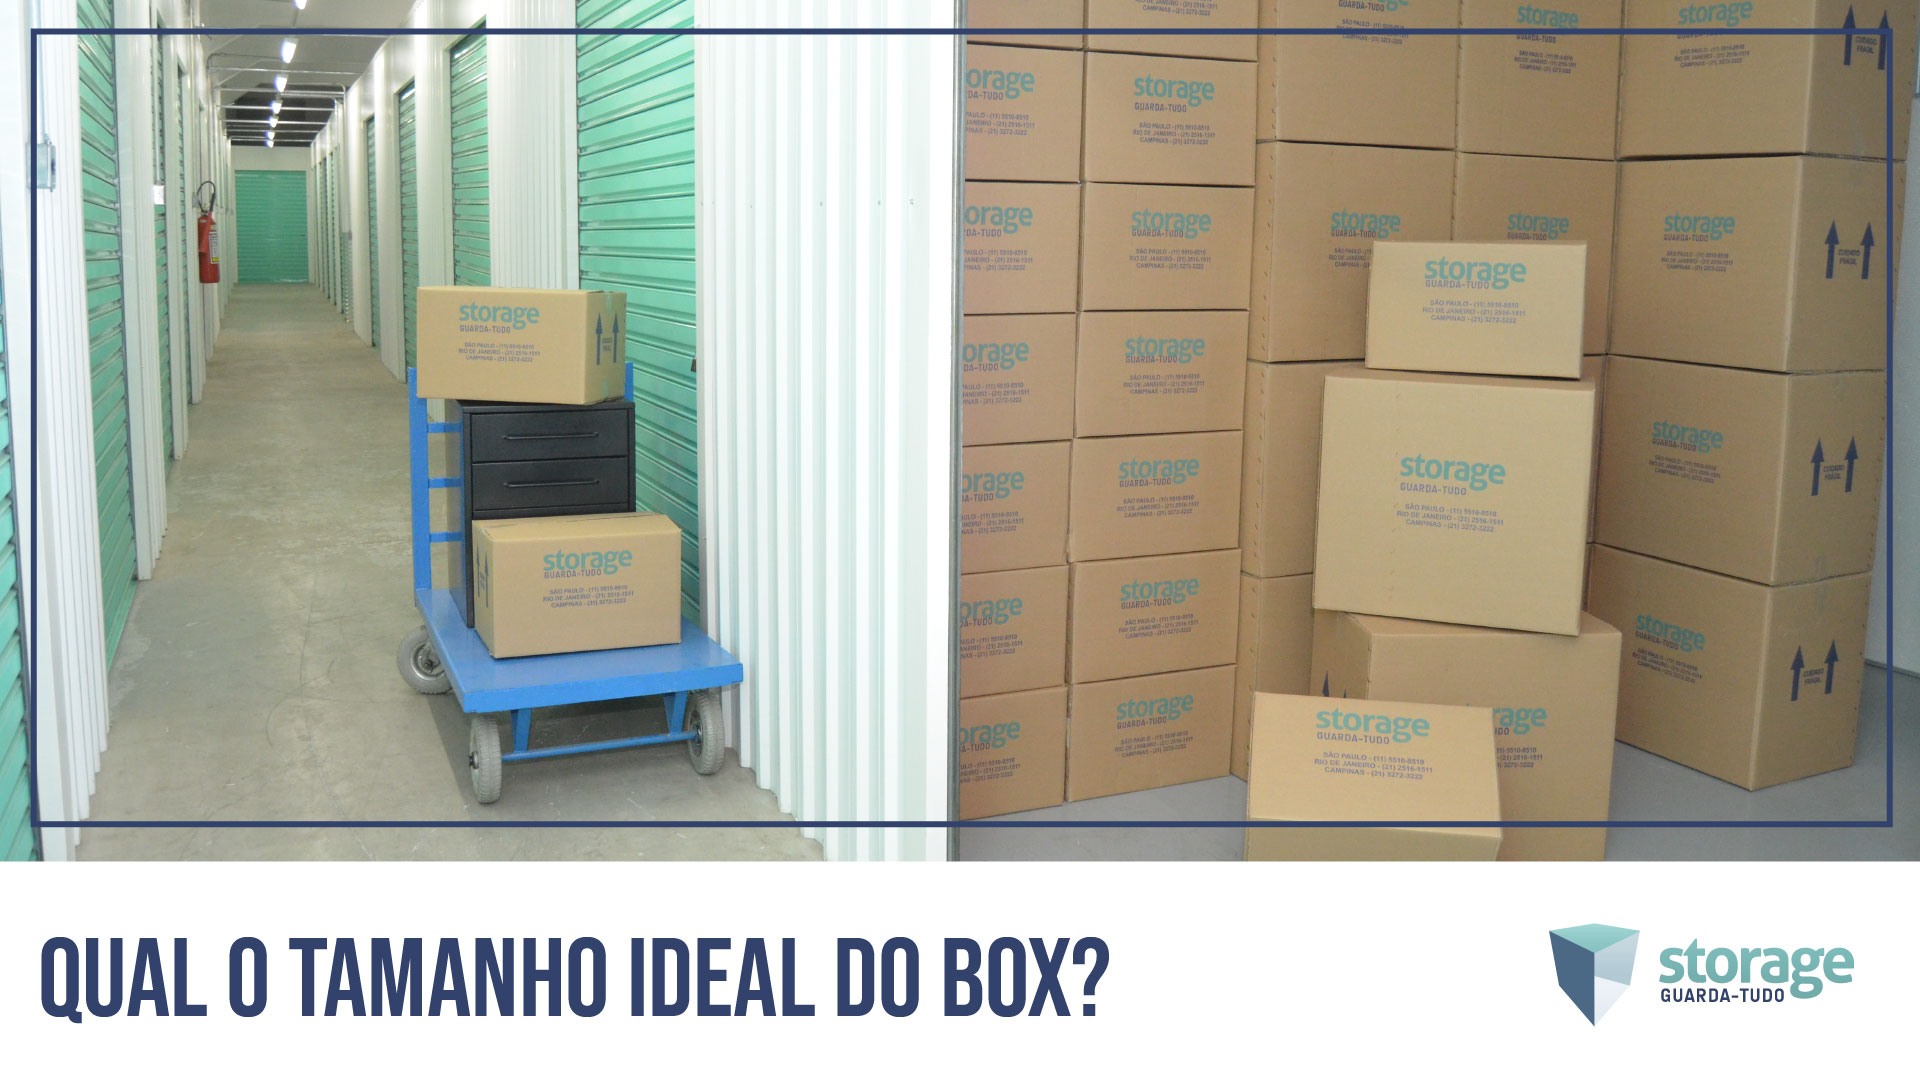 Self Storage - Qual o tamanho ideal do box?